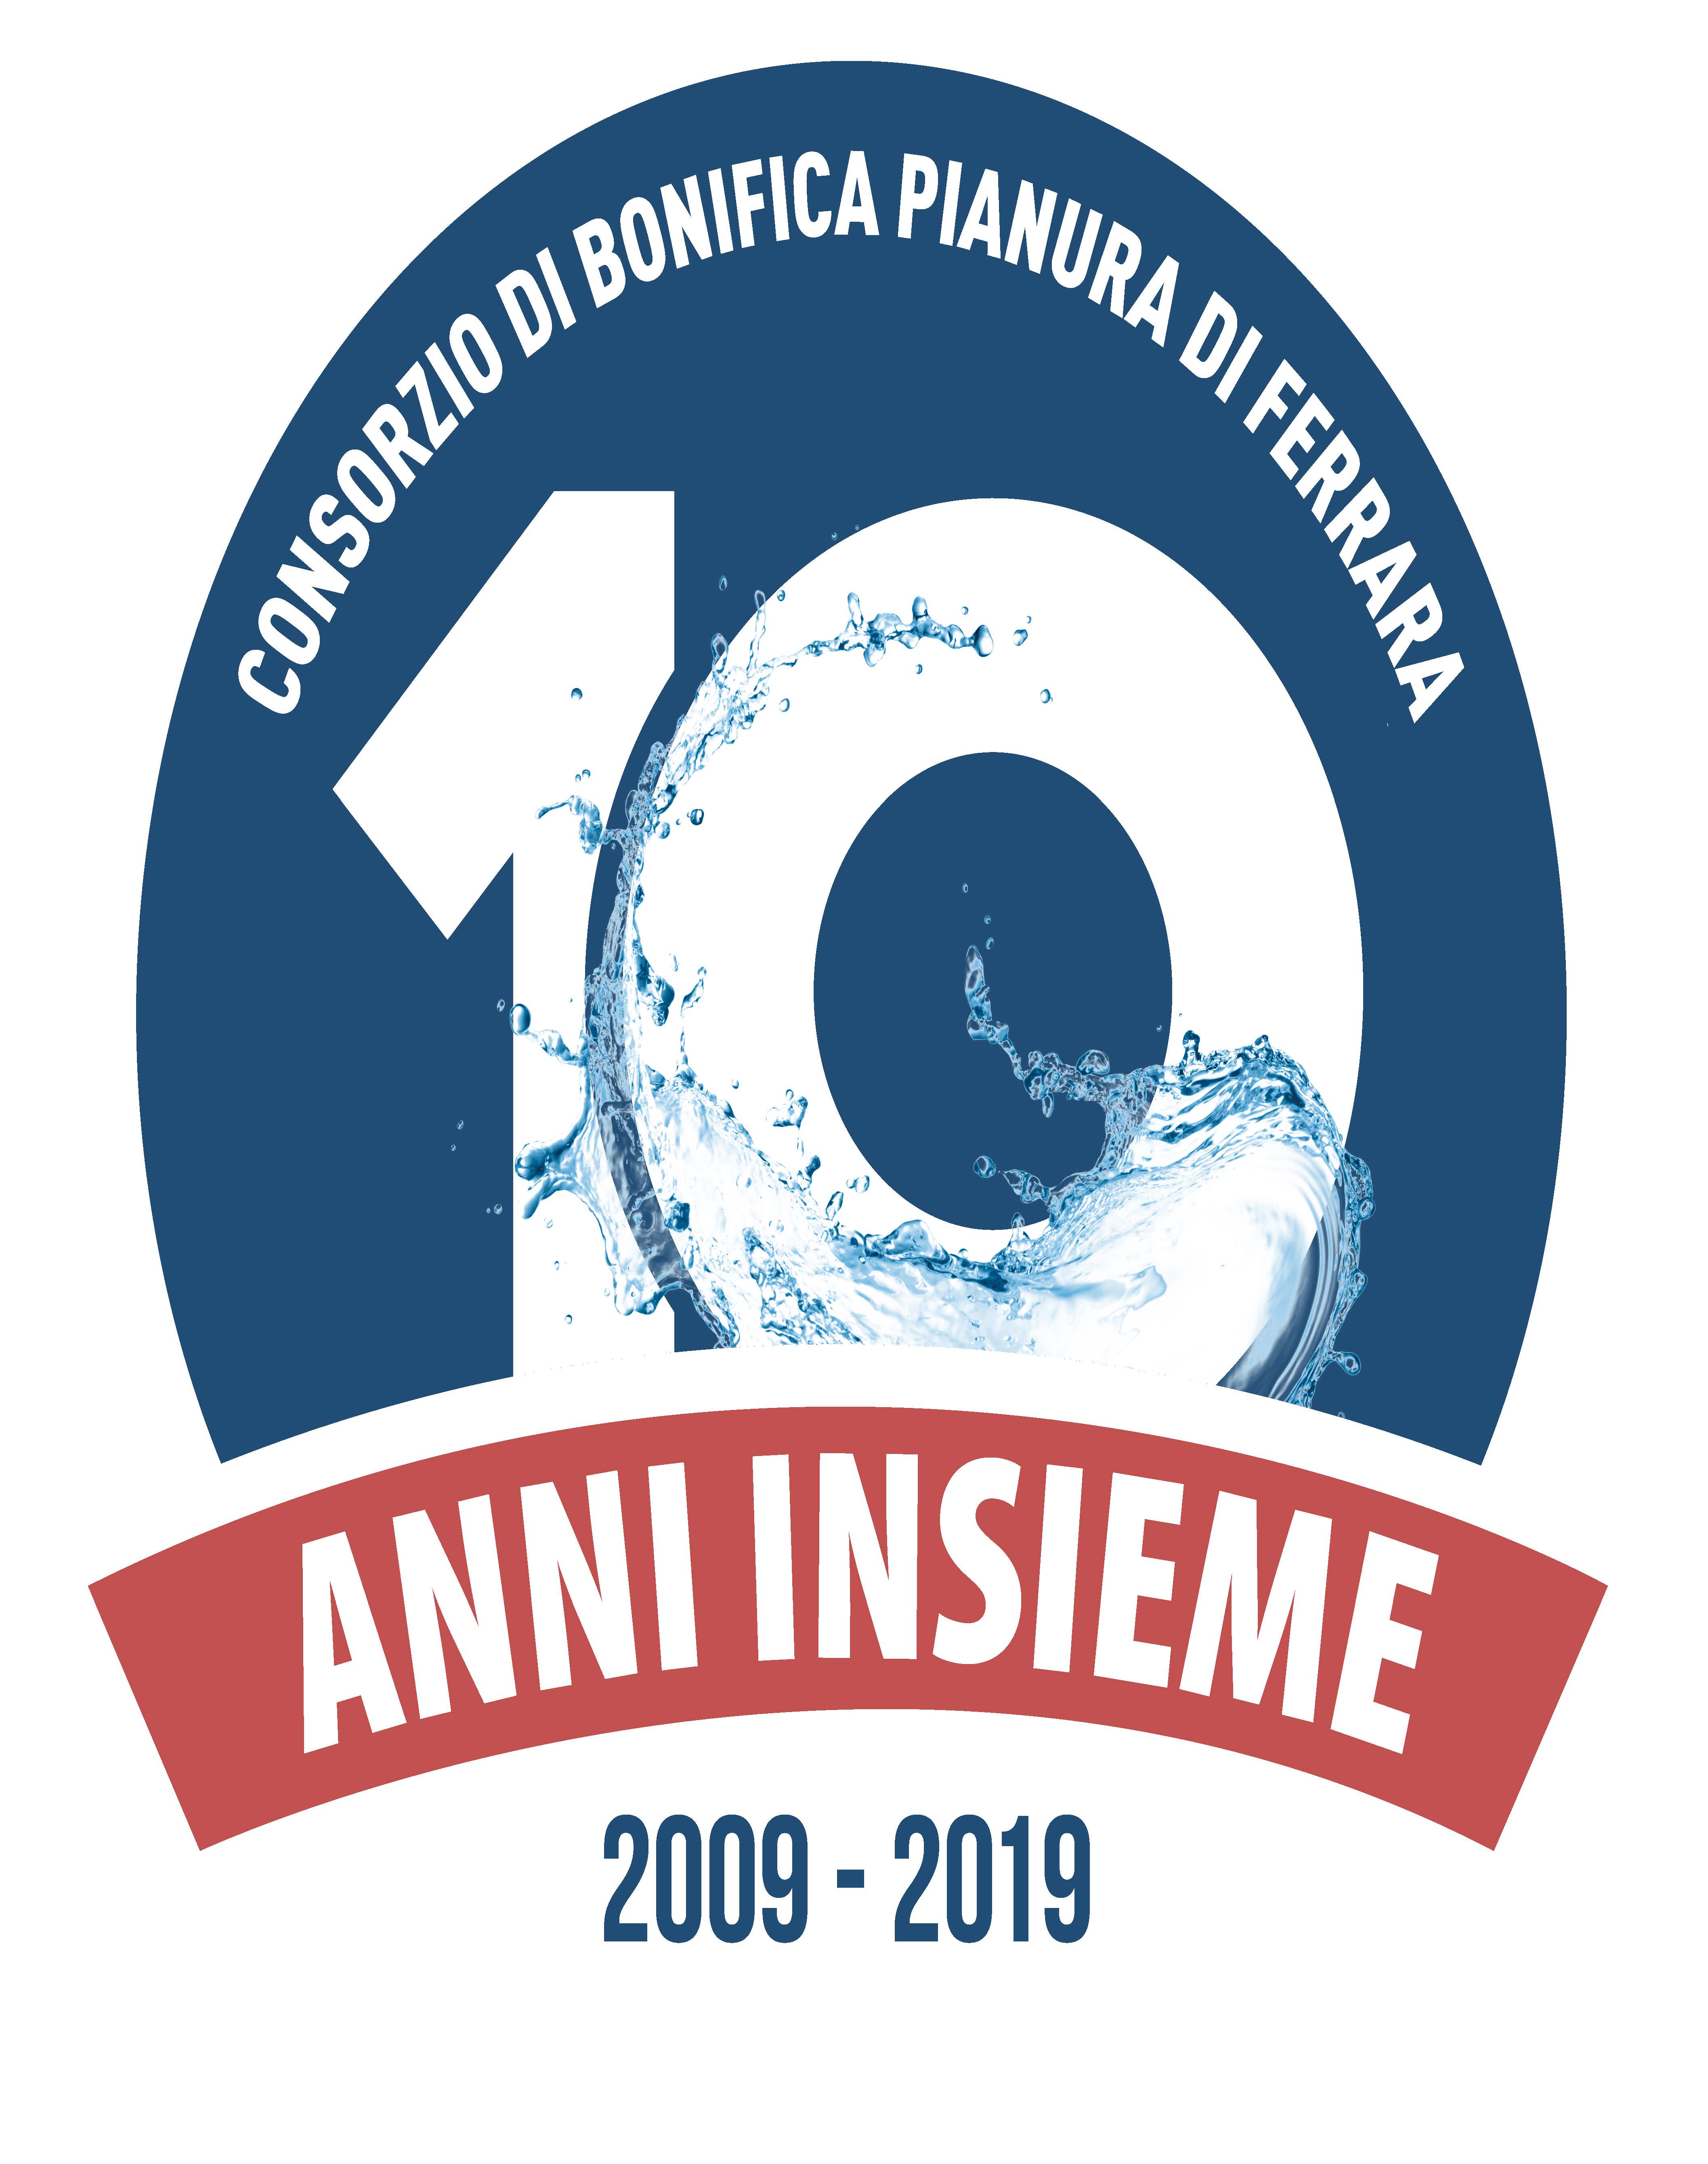 10 anni insieme 2009-2019 Consorzio di Bonifica Pianura di Ferrara